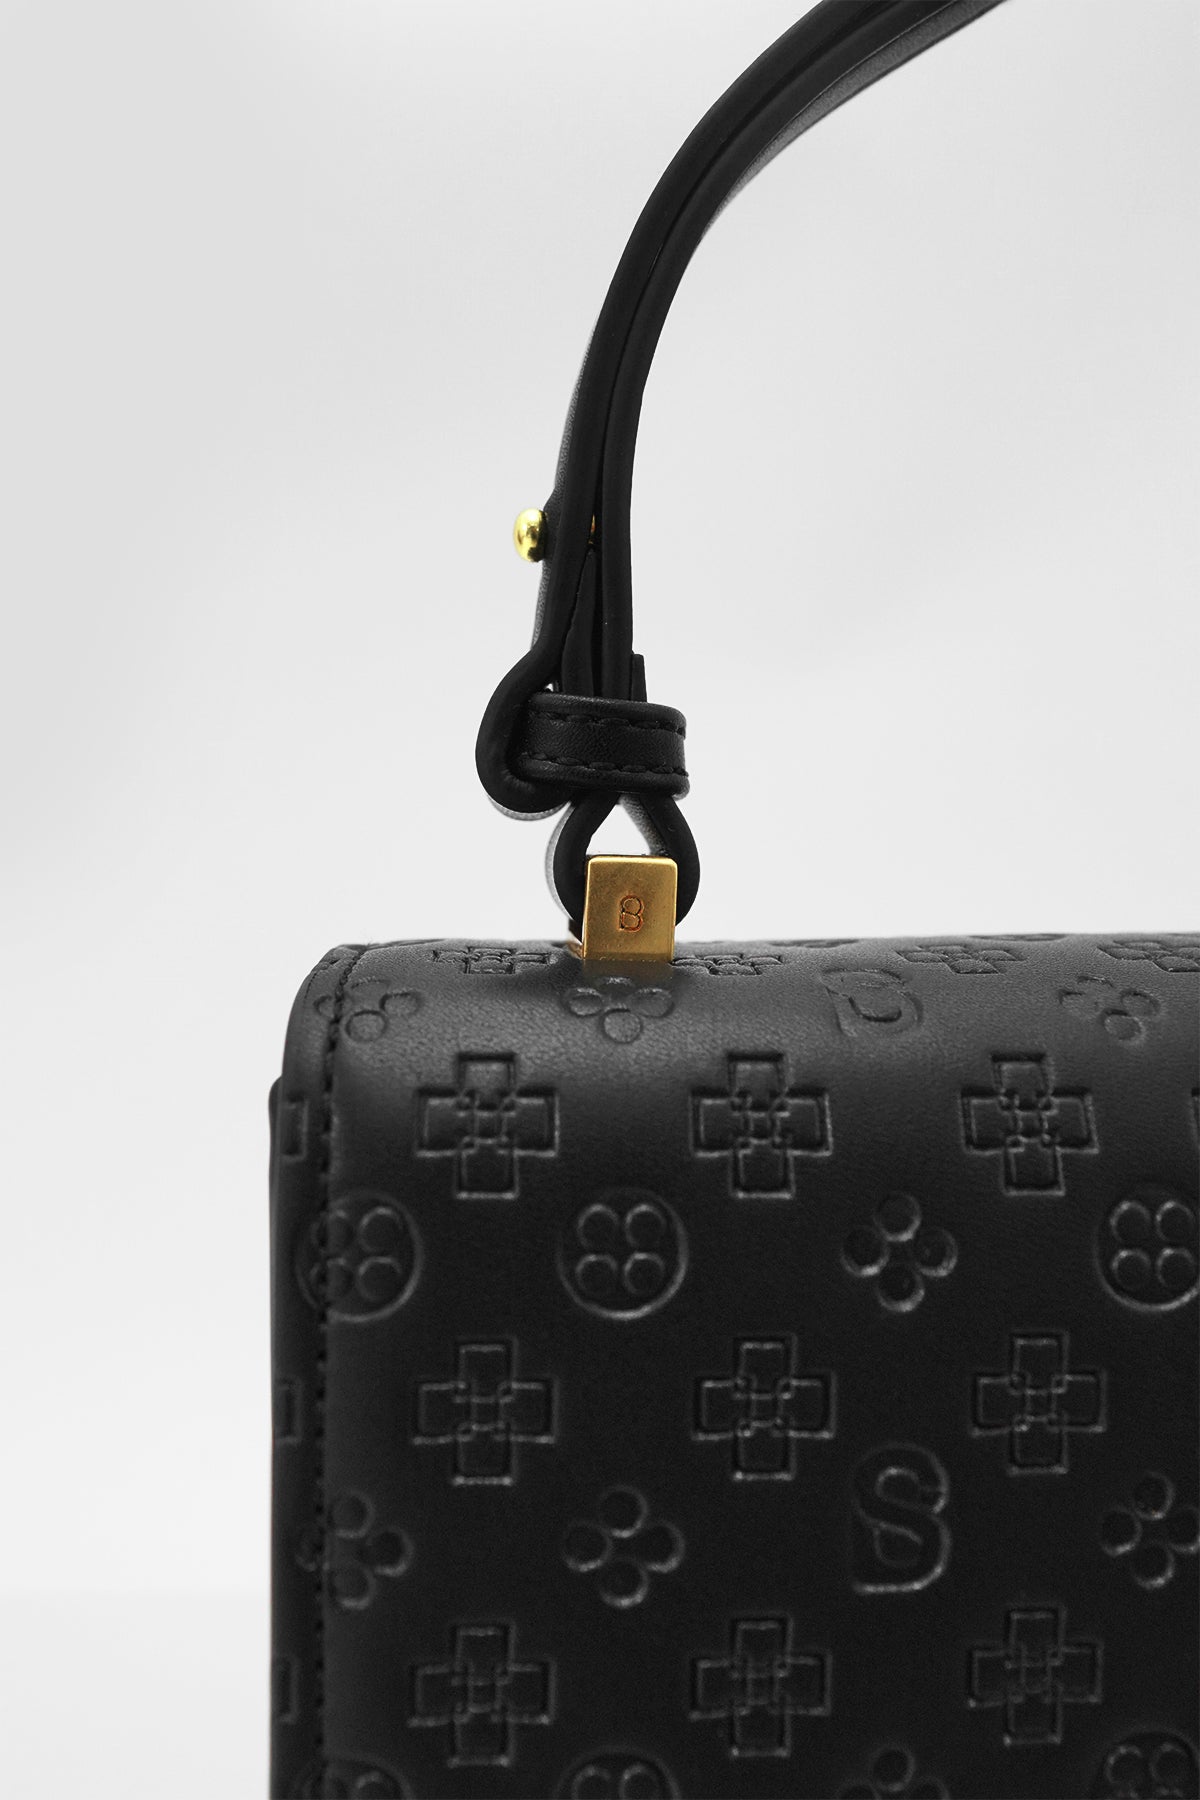 The Audrey Monogram Bag Medium - Black